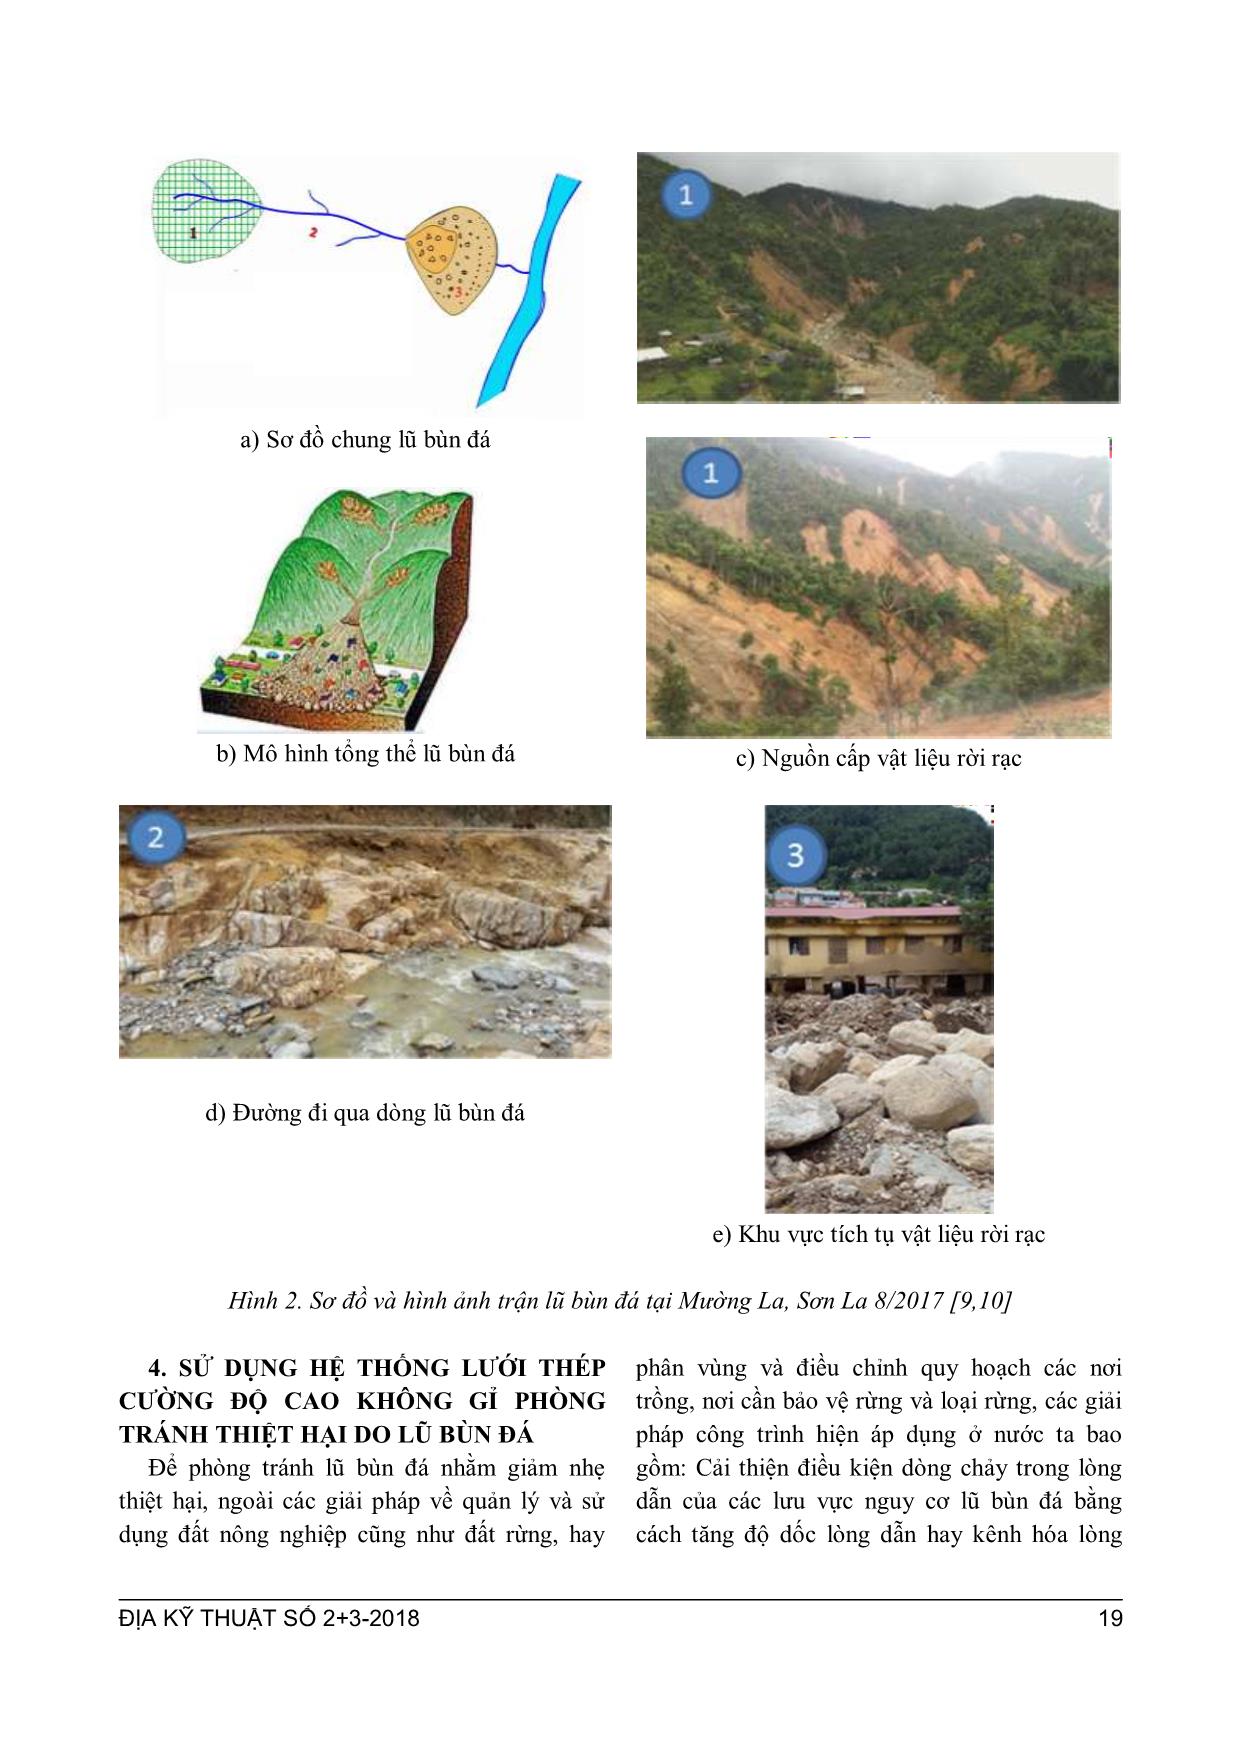 Đặc điểm lũ bùn đá và giải pháp cấu trúc linh hoạt giảm nhẹ tai biến do lũ bùn đá ở vùng núi phía Bắc Việt Nam trang 5